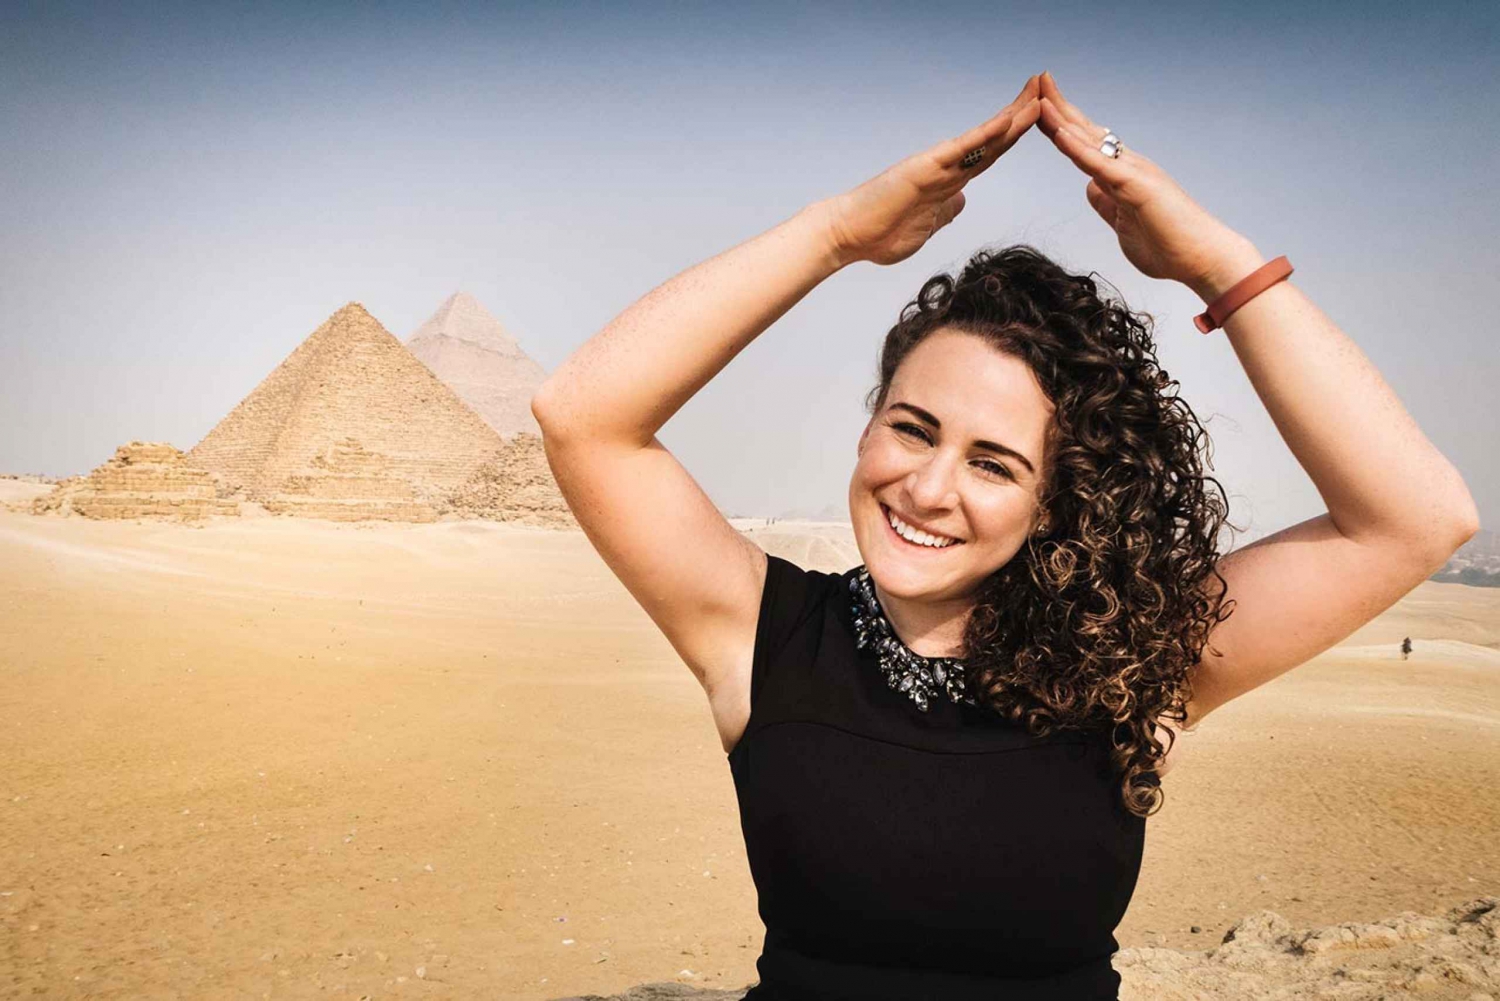 Kair: jednodniowa wycieczka Odwiedź piramidy, Sfinksa, Sakkara i Memfis.